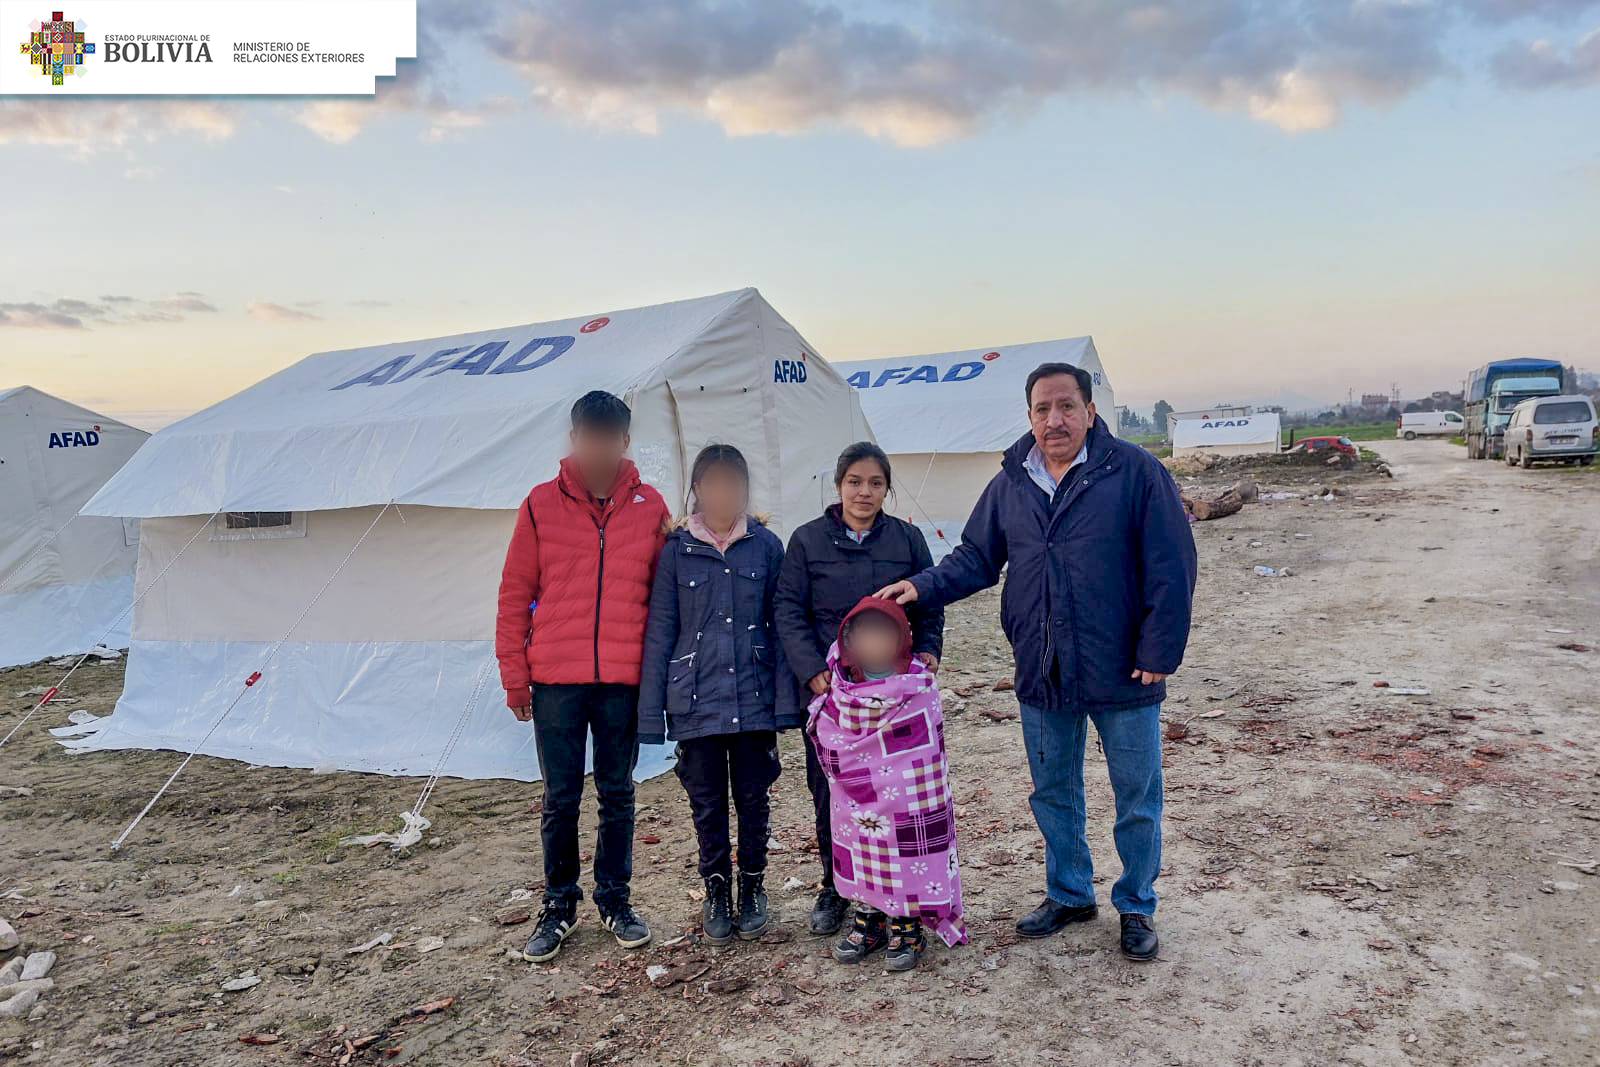 El Estado boliviano gestiona el retorno de una familia afectada por el sismo en Türkiye